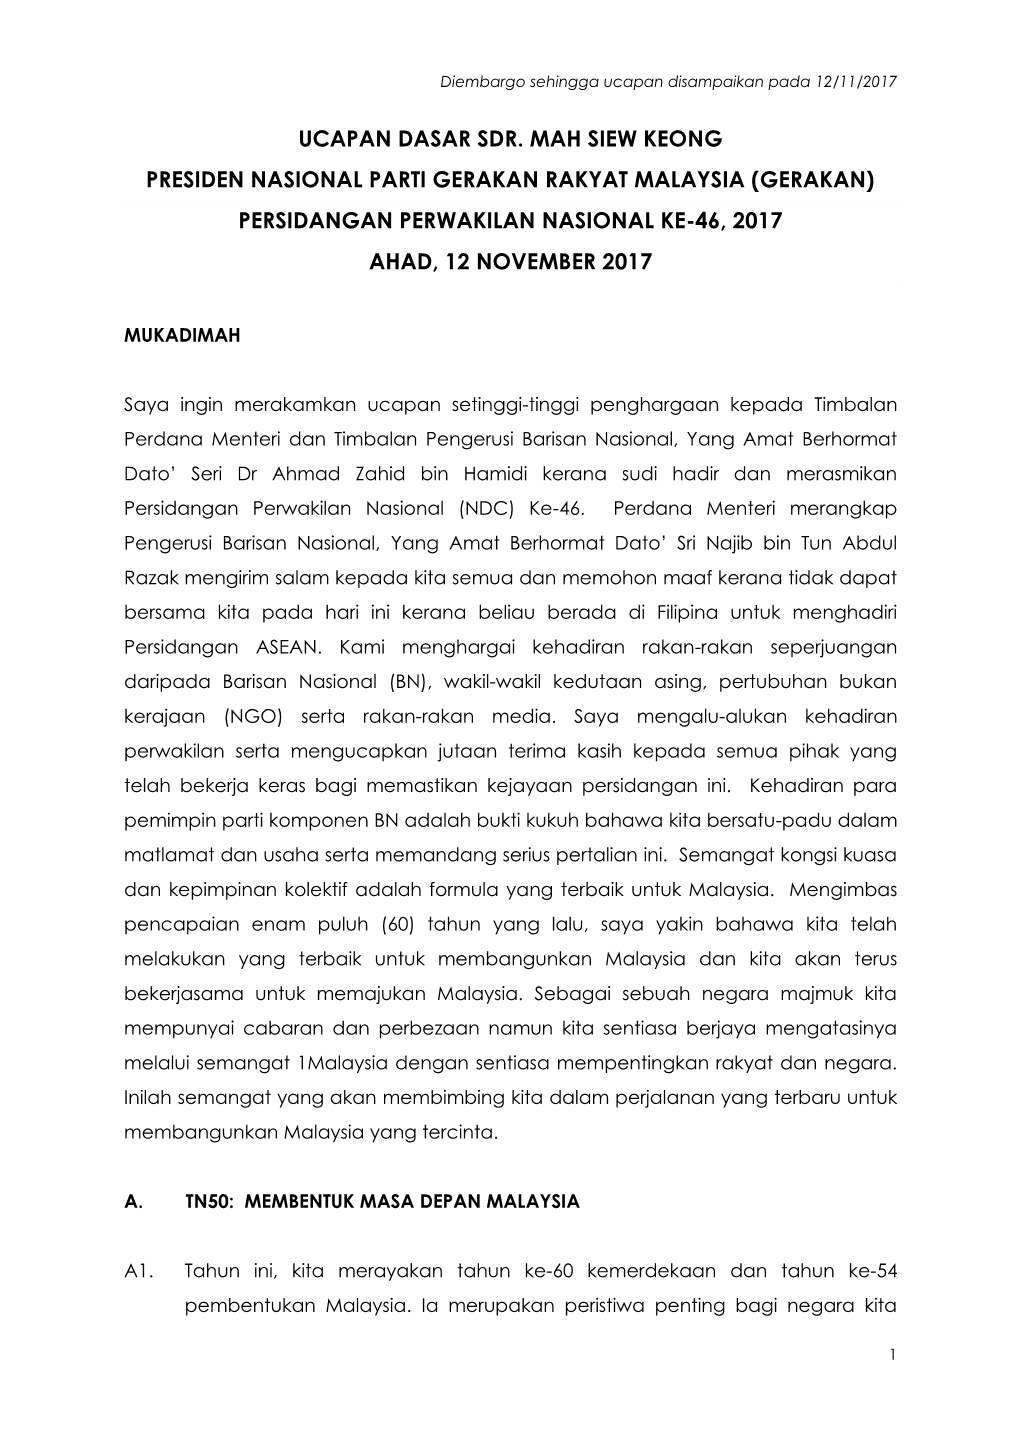 Ucapan Dasar Sdr. Mah Siew Keong Presiden Nasional Parti Gerakan Rakyat Malaysia (Gerakan) Persidangan Perwakilan Nasional Ke-46, 2017 Ahad, 12 November 2017